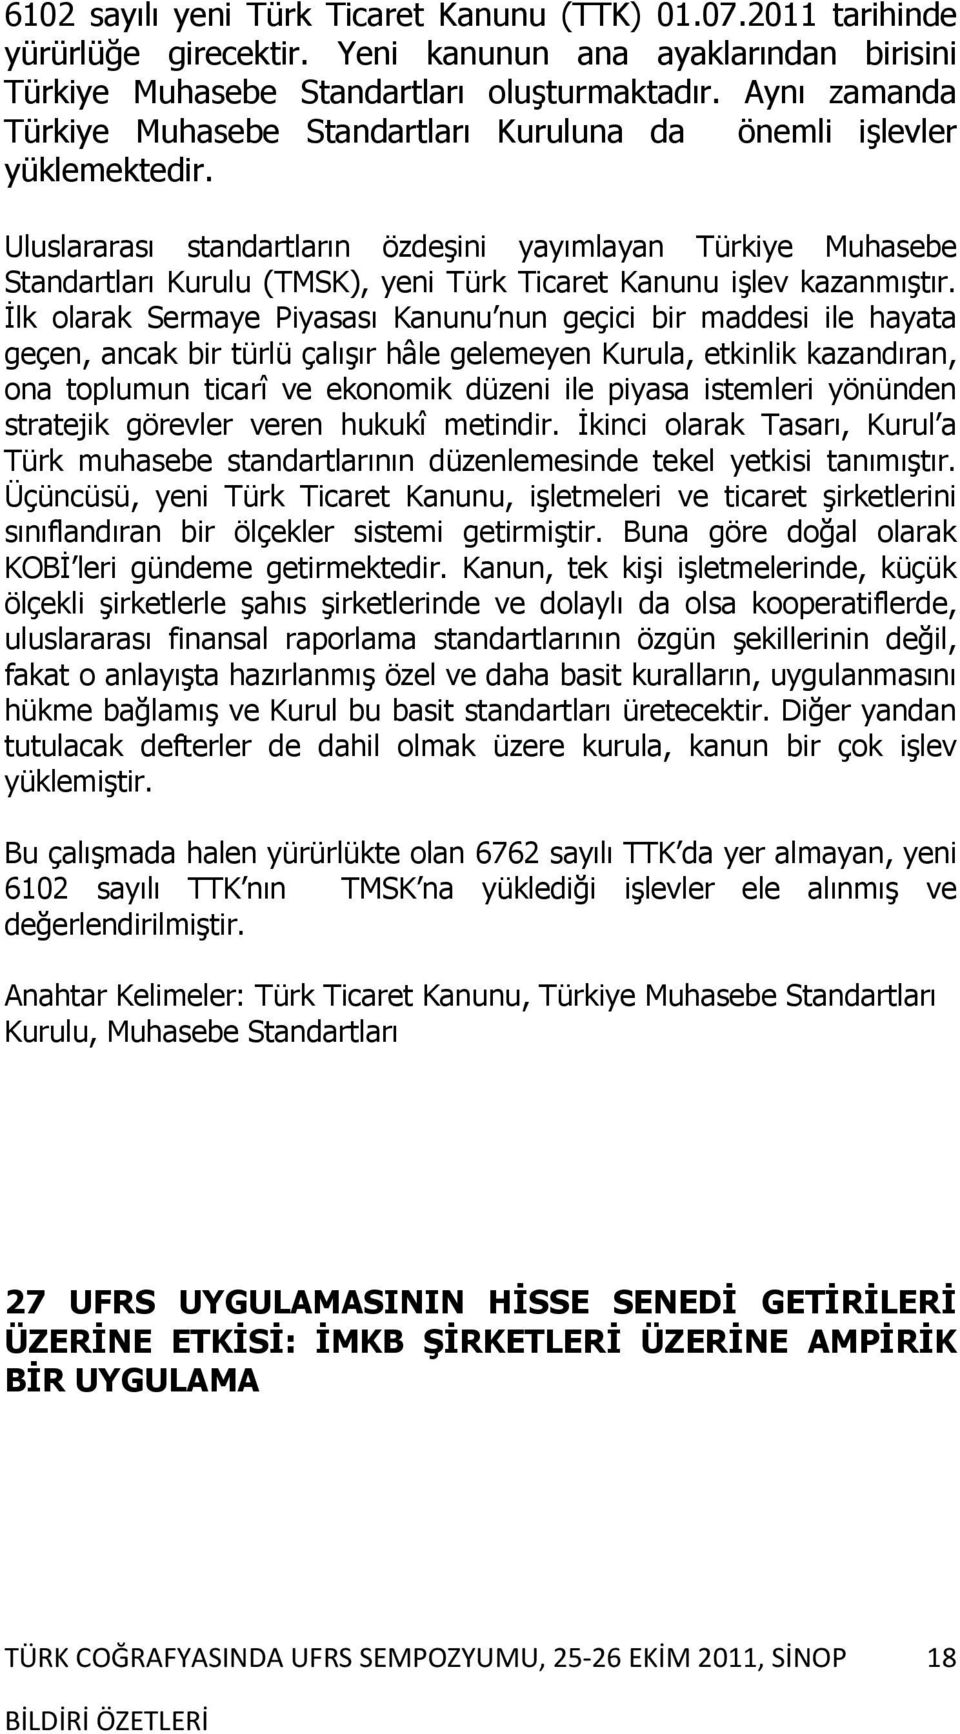 Uluslararası standartların özdeşini yayımlayan Türkiye Muhasebe Standartları Kurulu (TMSK), yeni Türk Ticaret Kanunu işlev kazanmıştır.